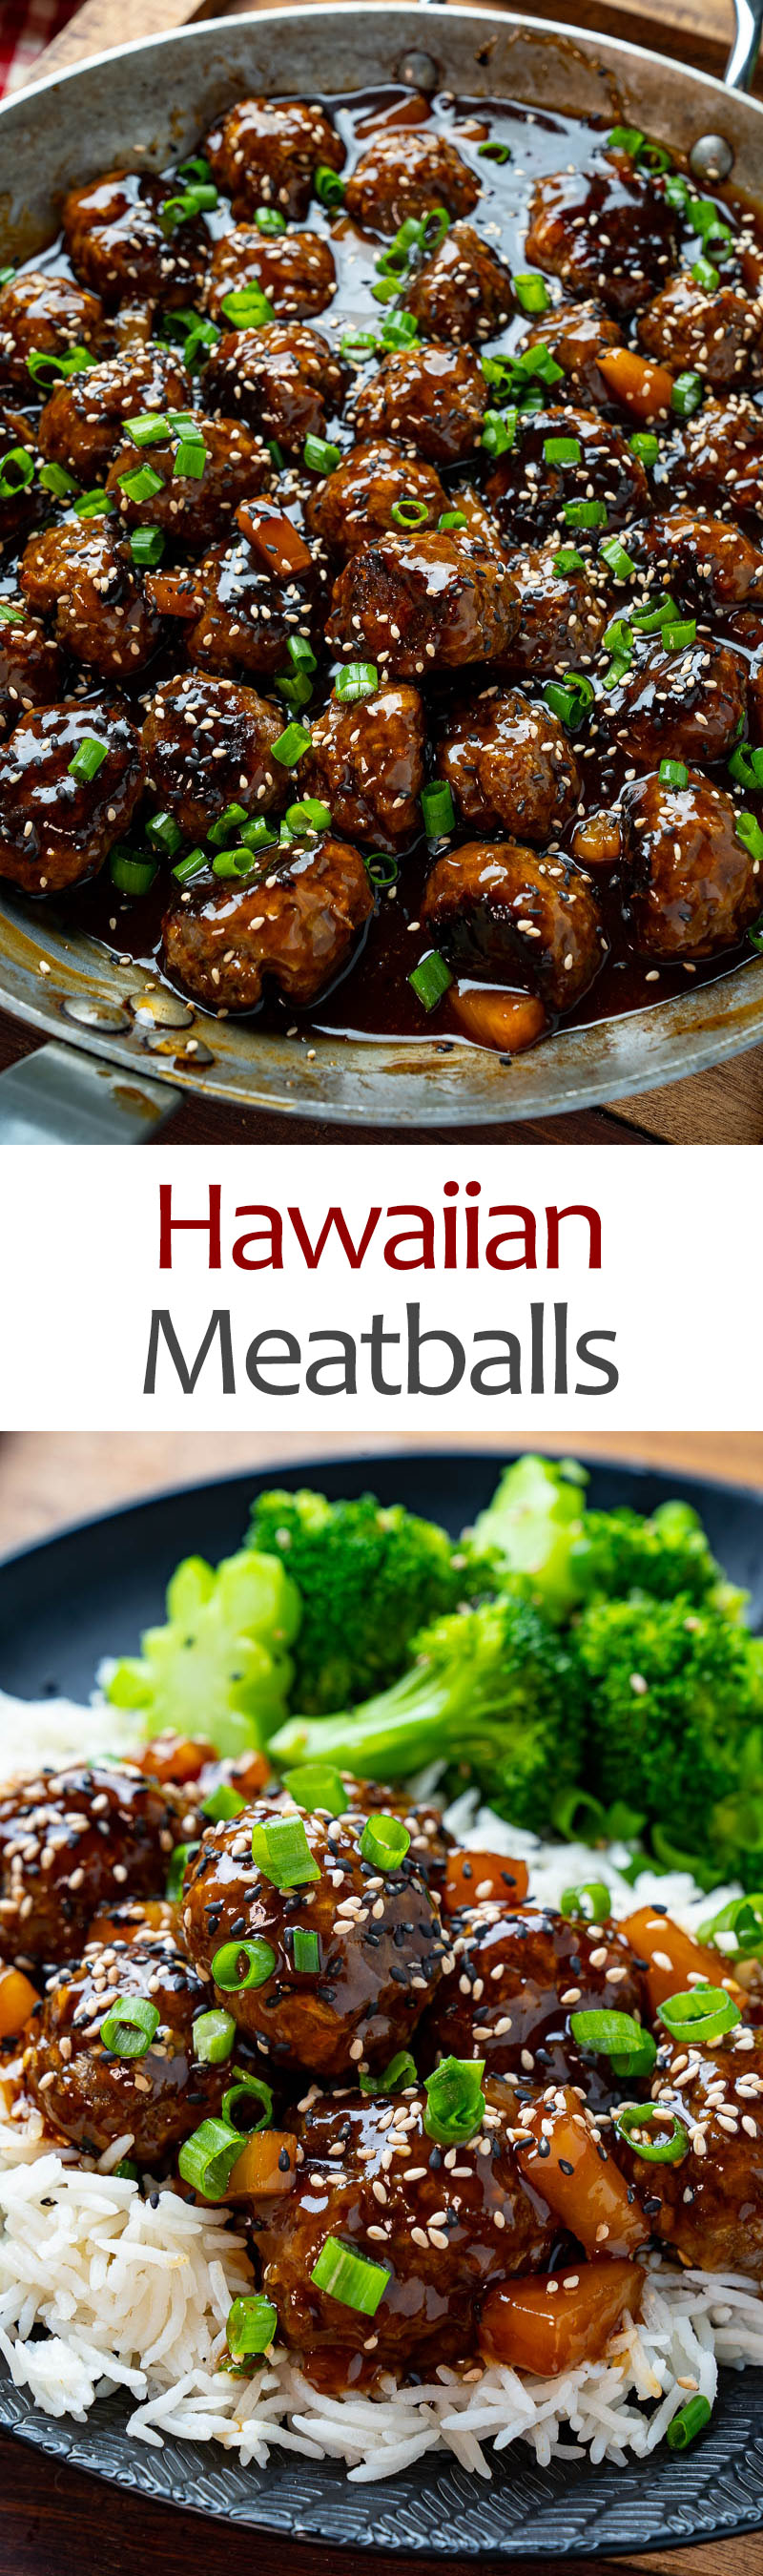 Hawaiian Meatballs